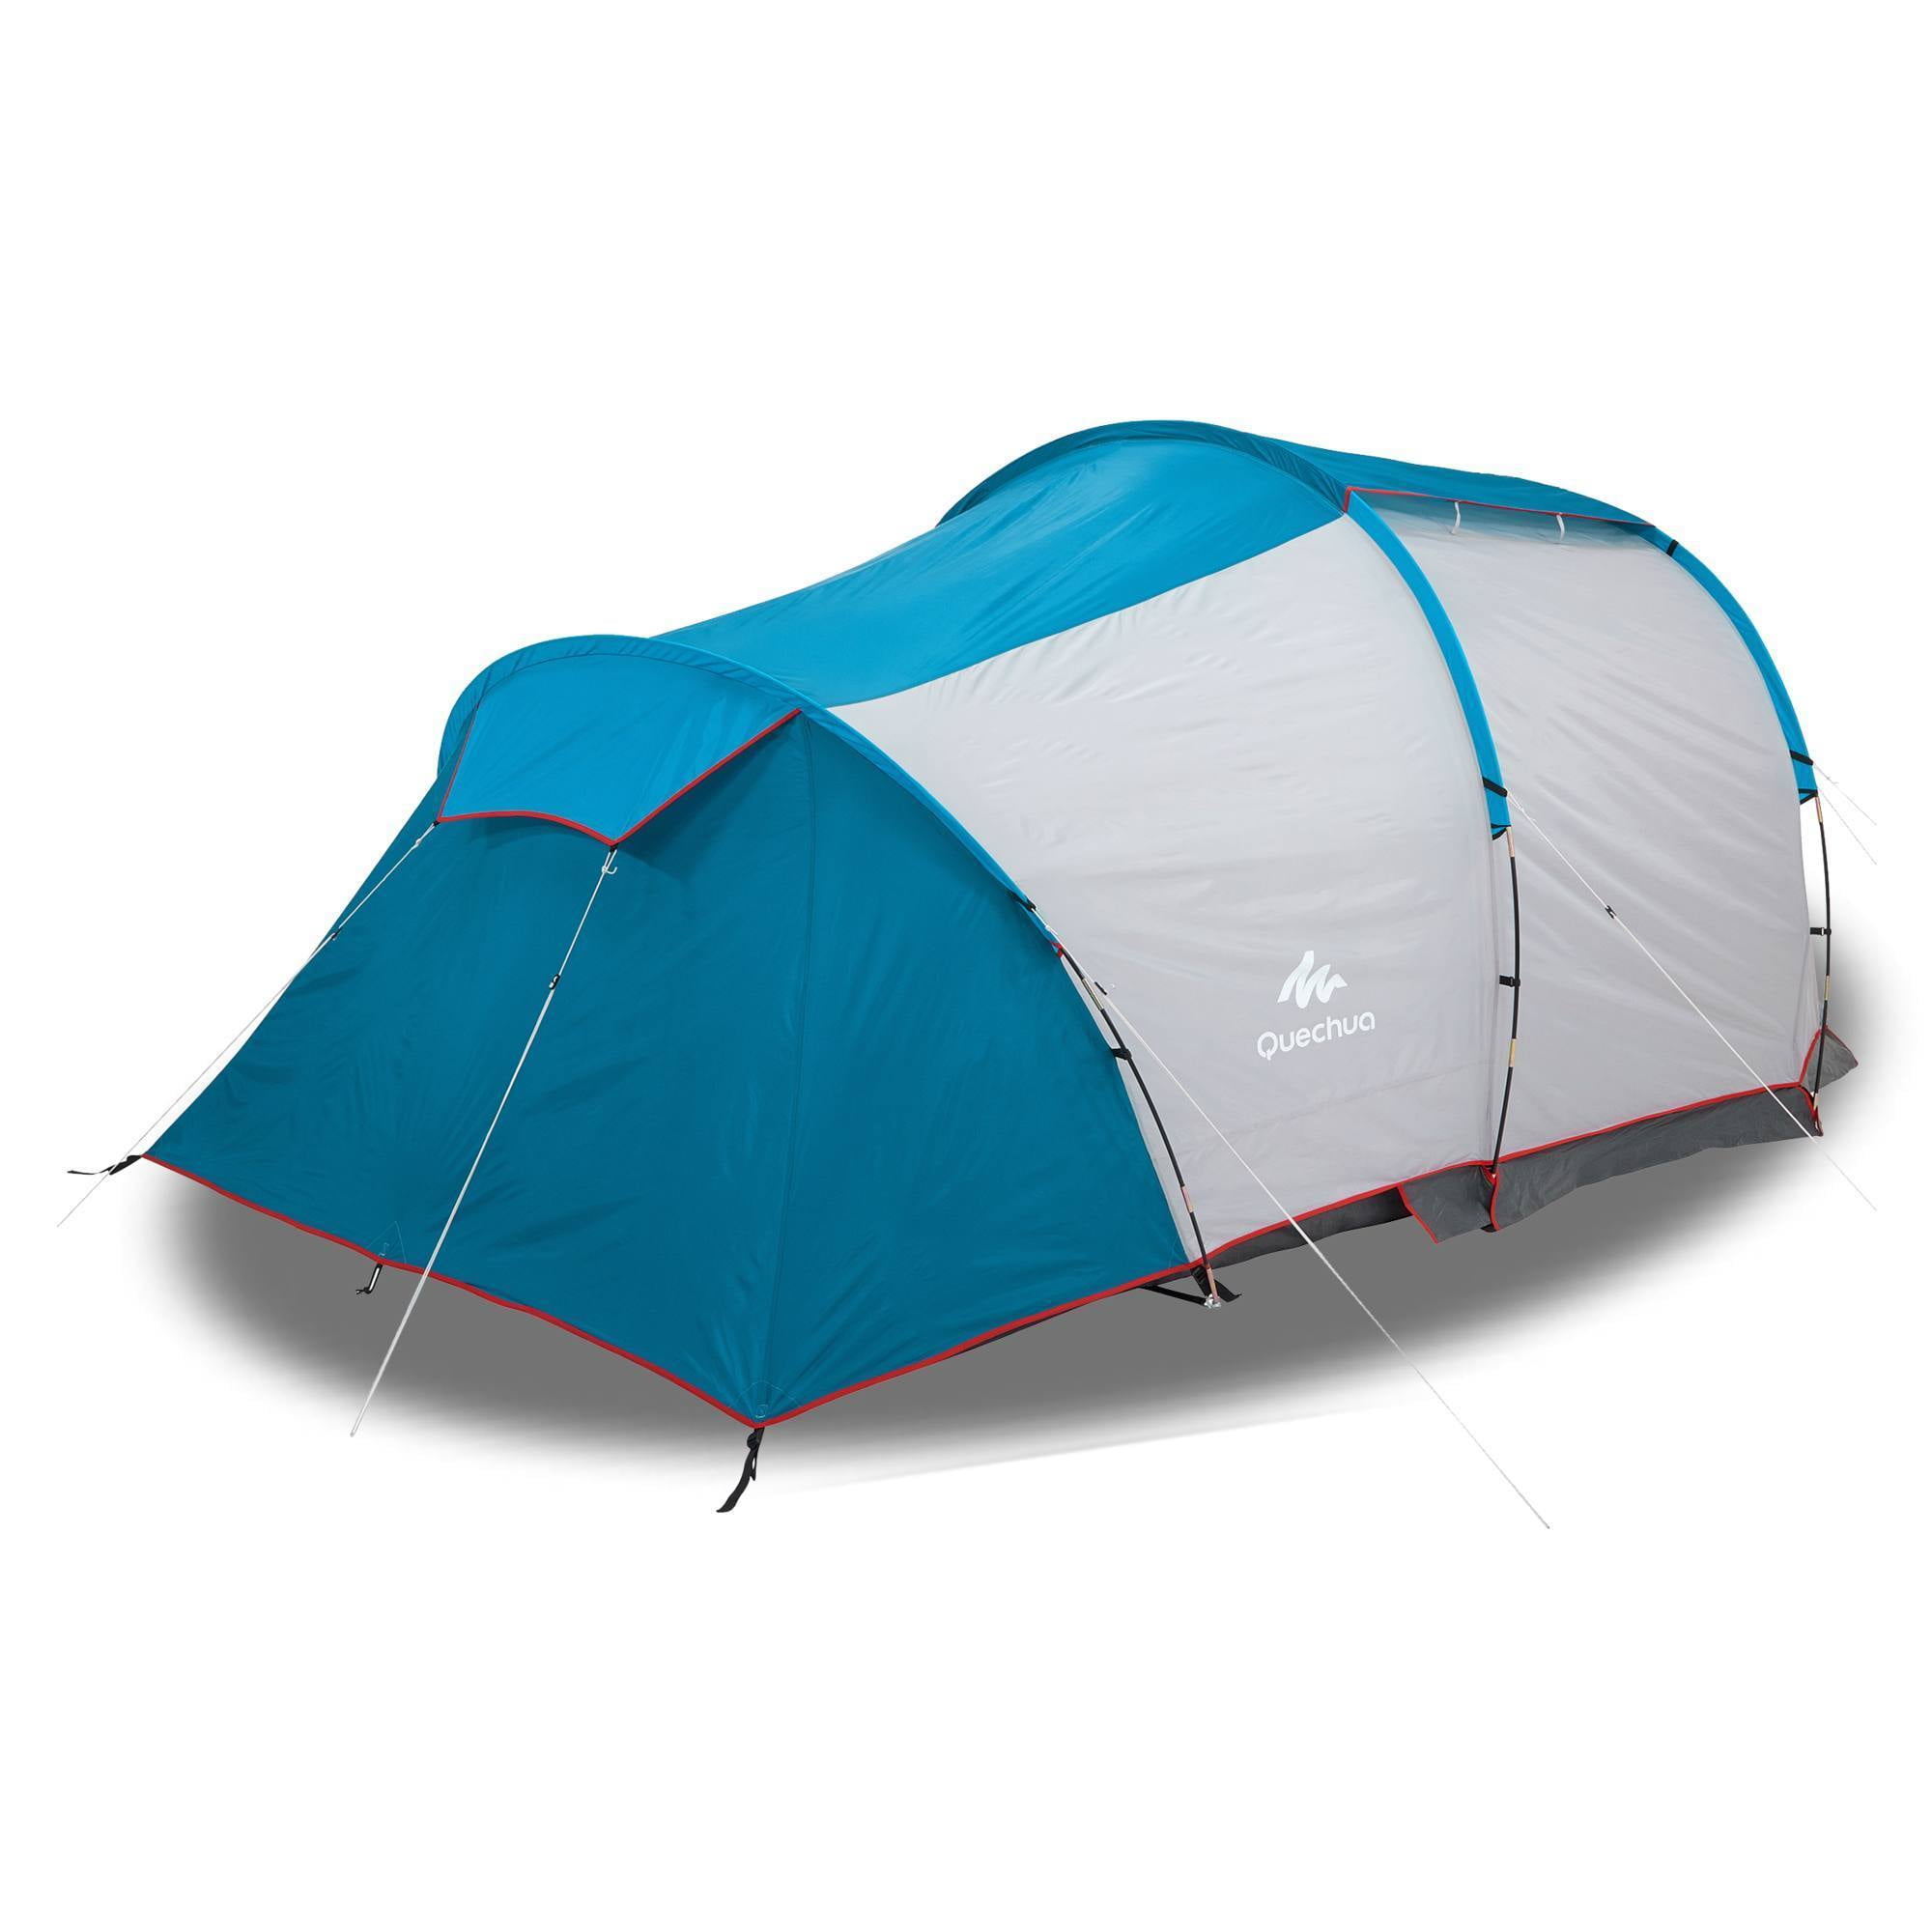 heilig Relatie Fonkeling Decathlon Quechua, Waterproof, Family Camping Tent, 4 Person, 1 Bedroom -  Walmart.com